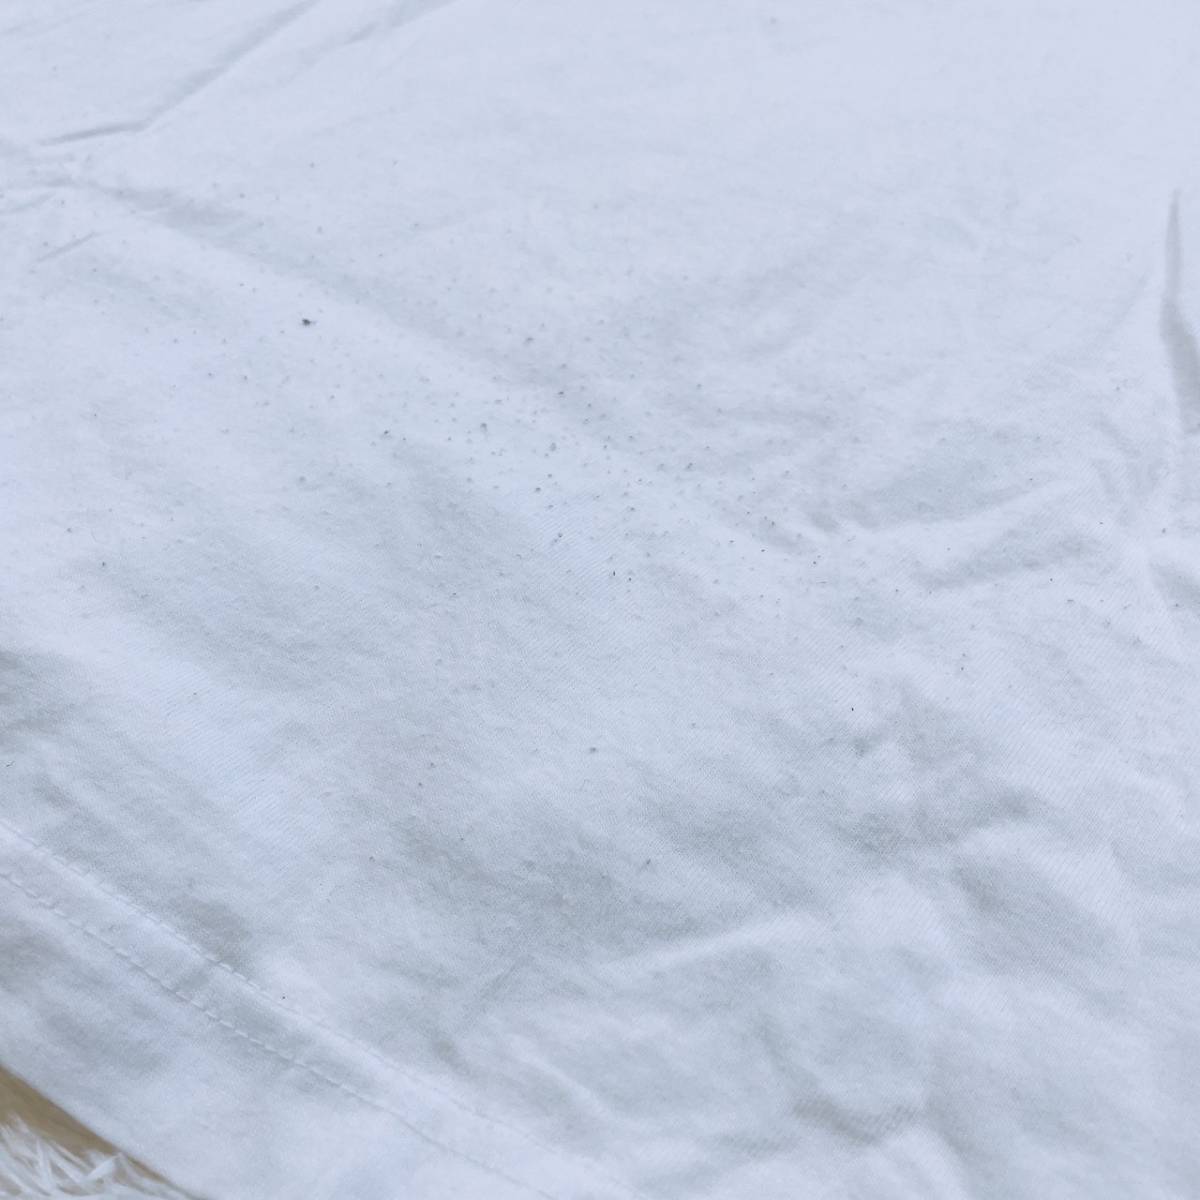 メンズL Hanes トップス シャツ 半袖シャツ Tシャツ 半袖Tシャツ カジュアルシャツ ホワイト 無地 丸ネック シンプル ヘインズ 【21414】